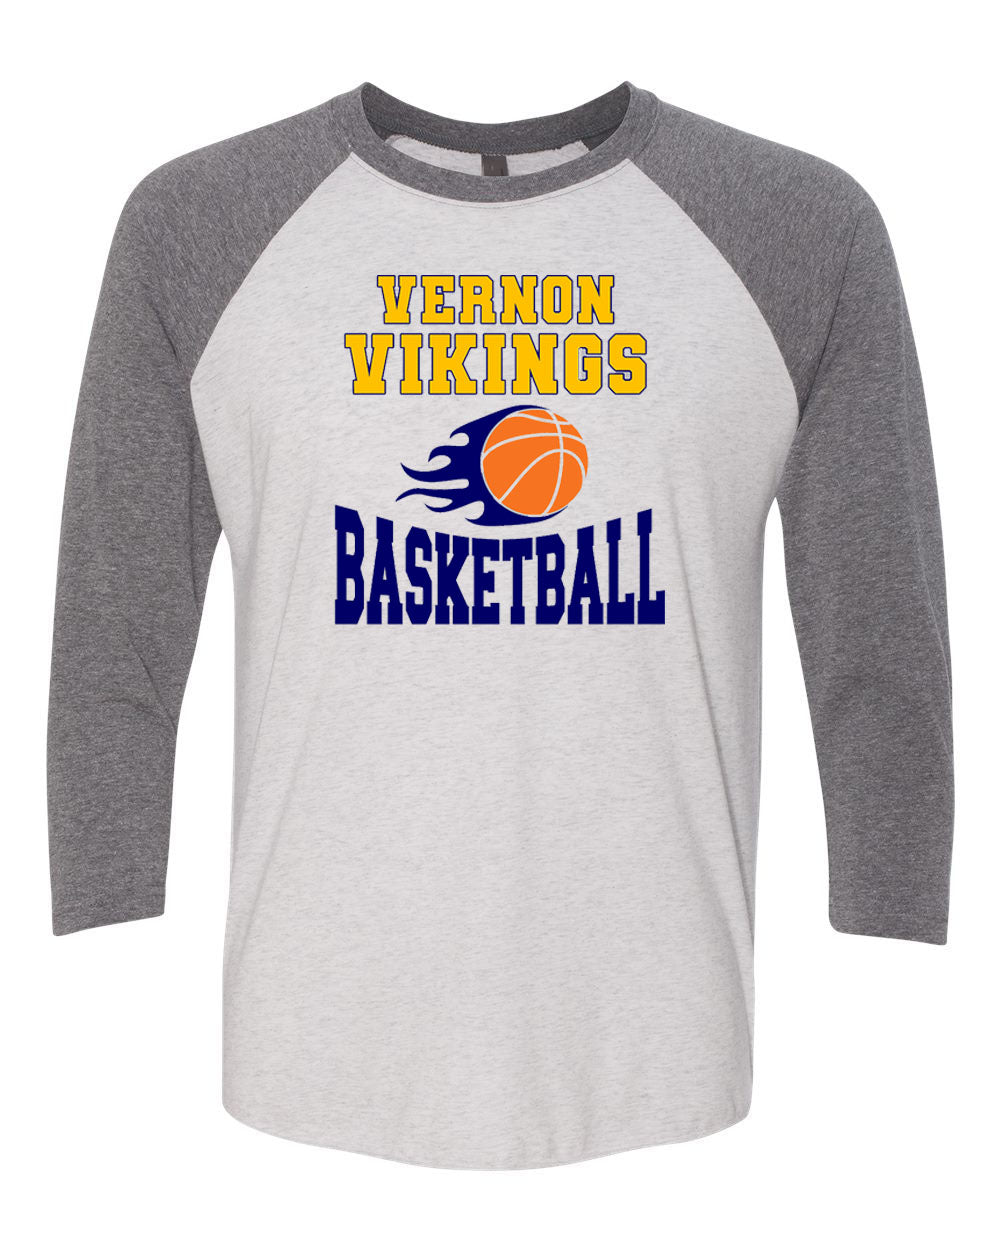 Vikings Basketball Design 4 raglan shirt